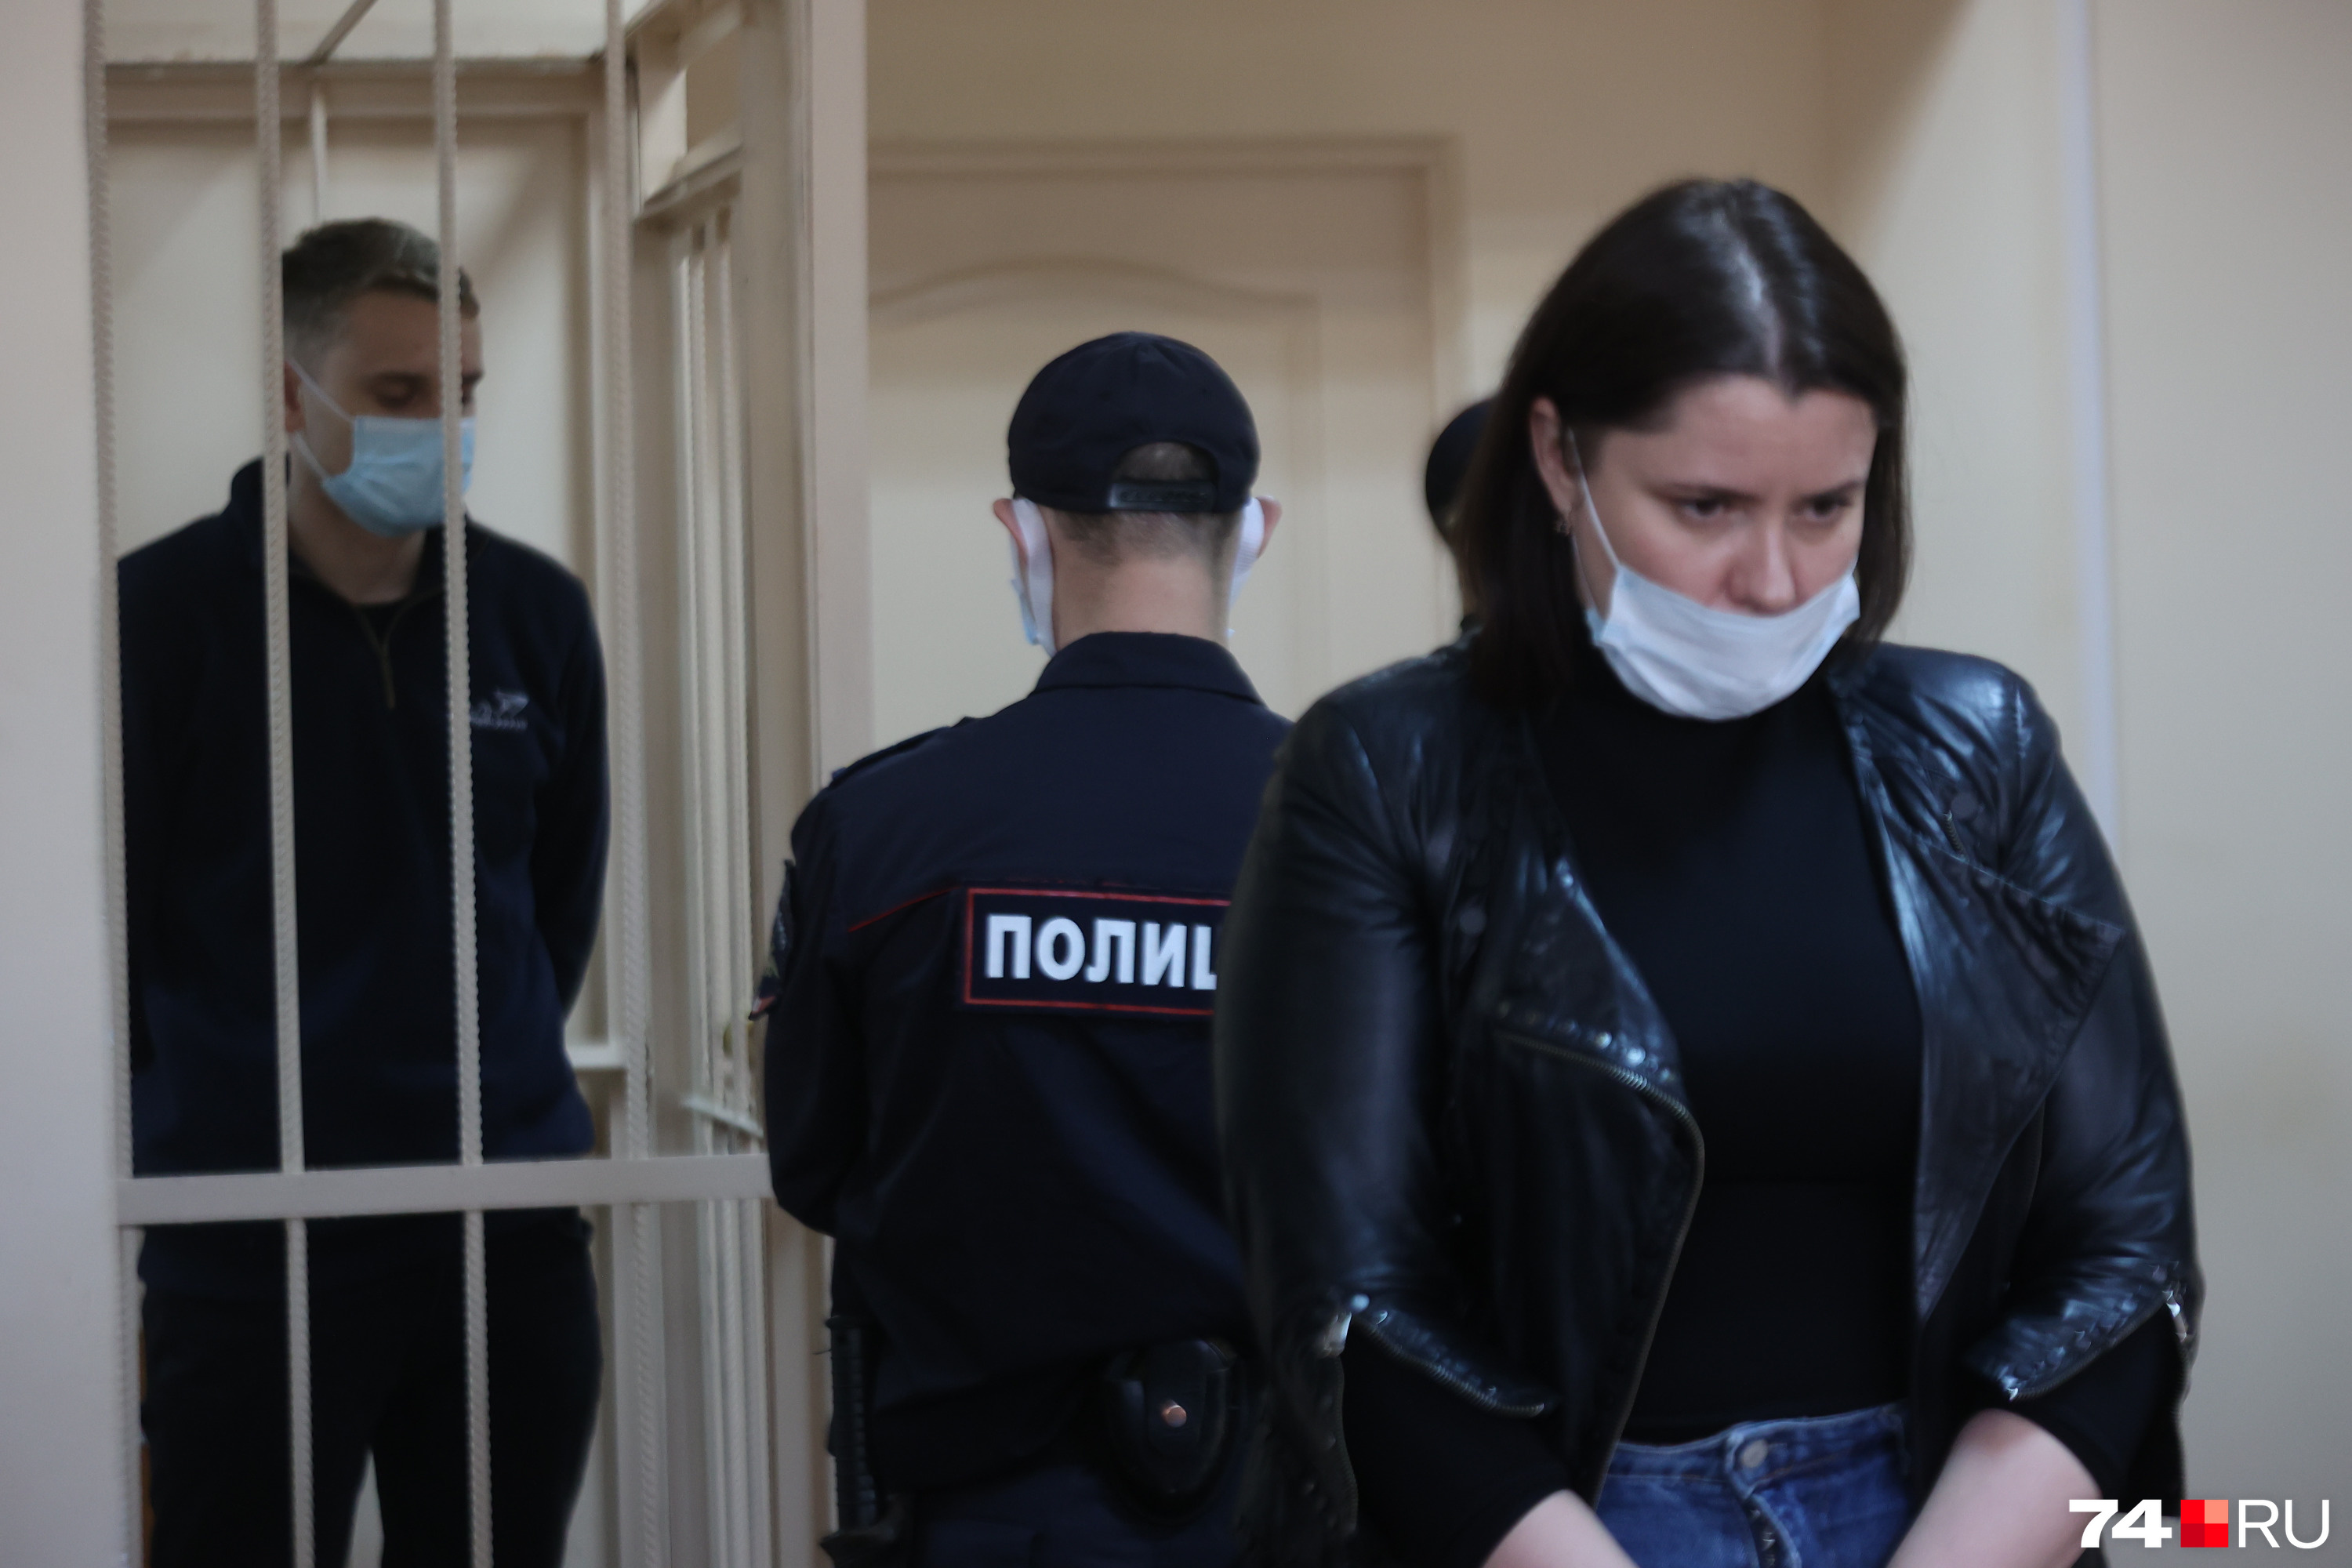 Анастасия Магдеева просила суд отпустить Дмитрия Зыкова под залог или на домашний арест 